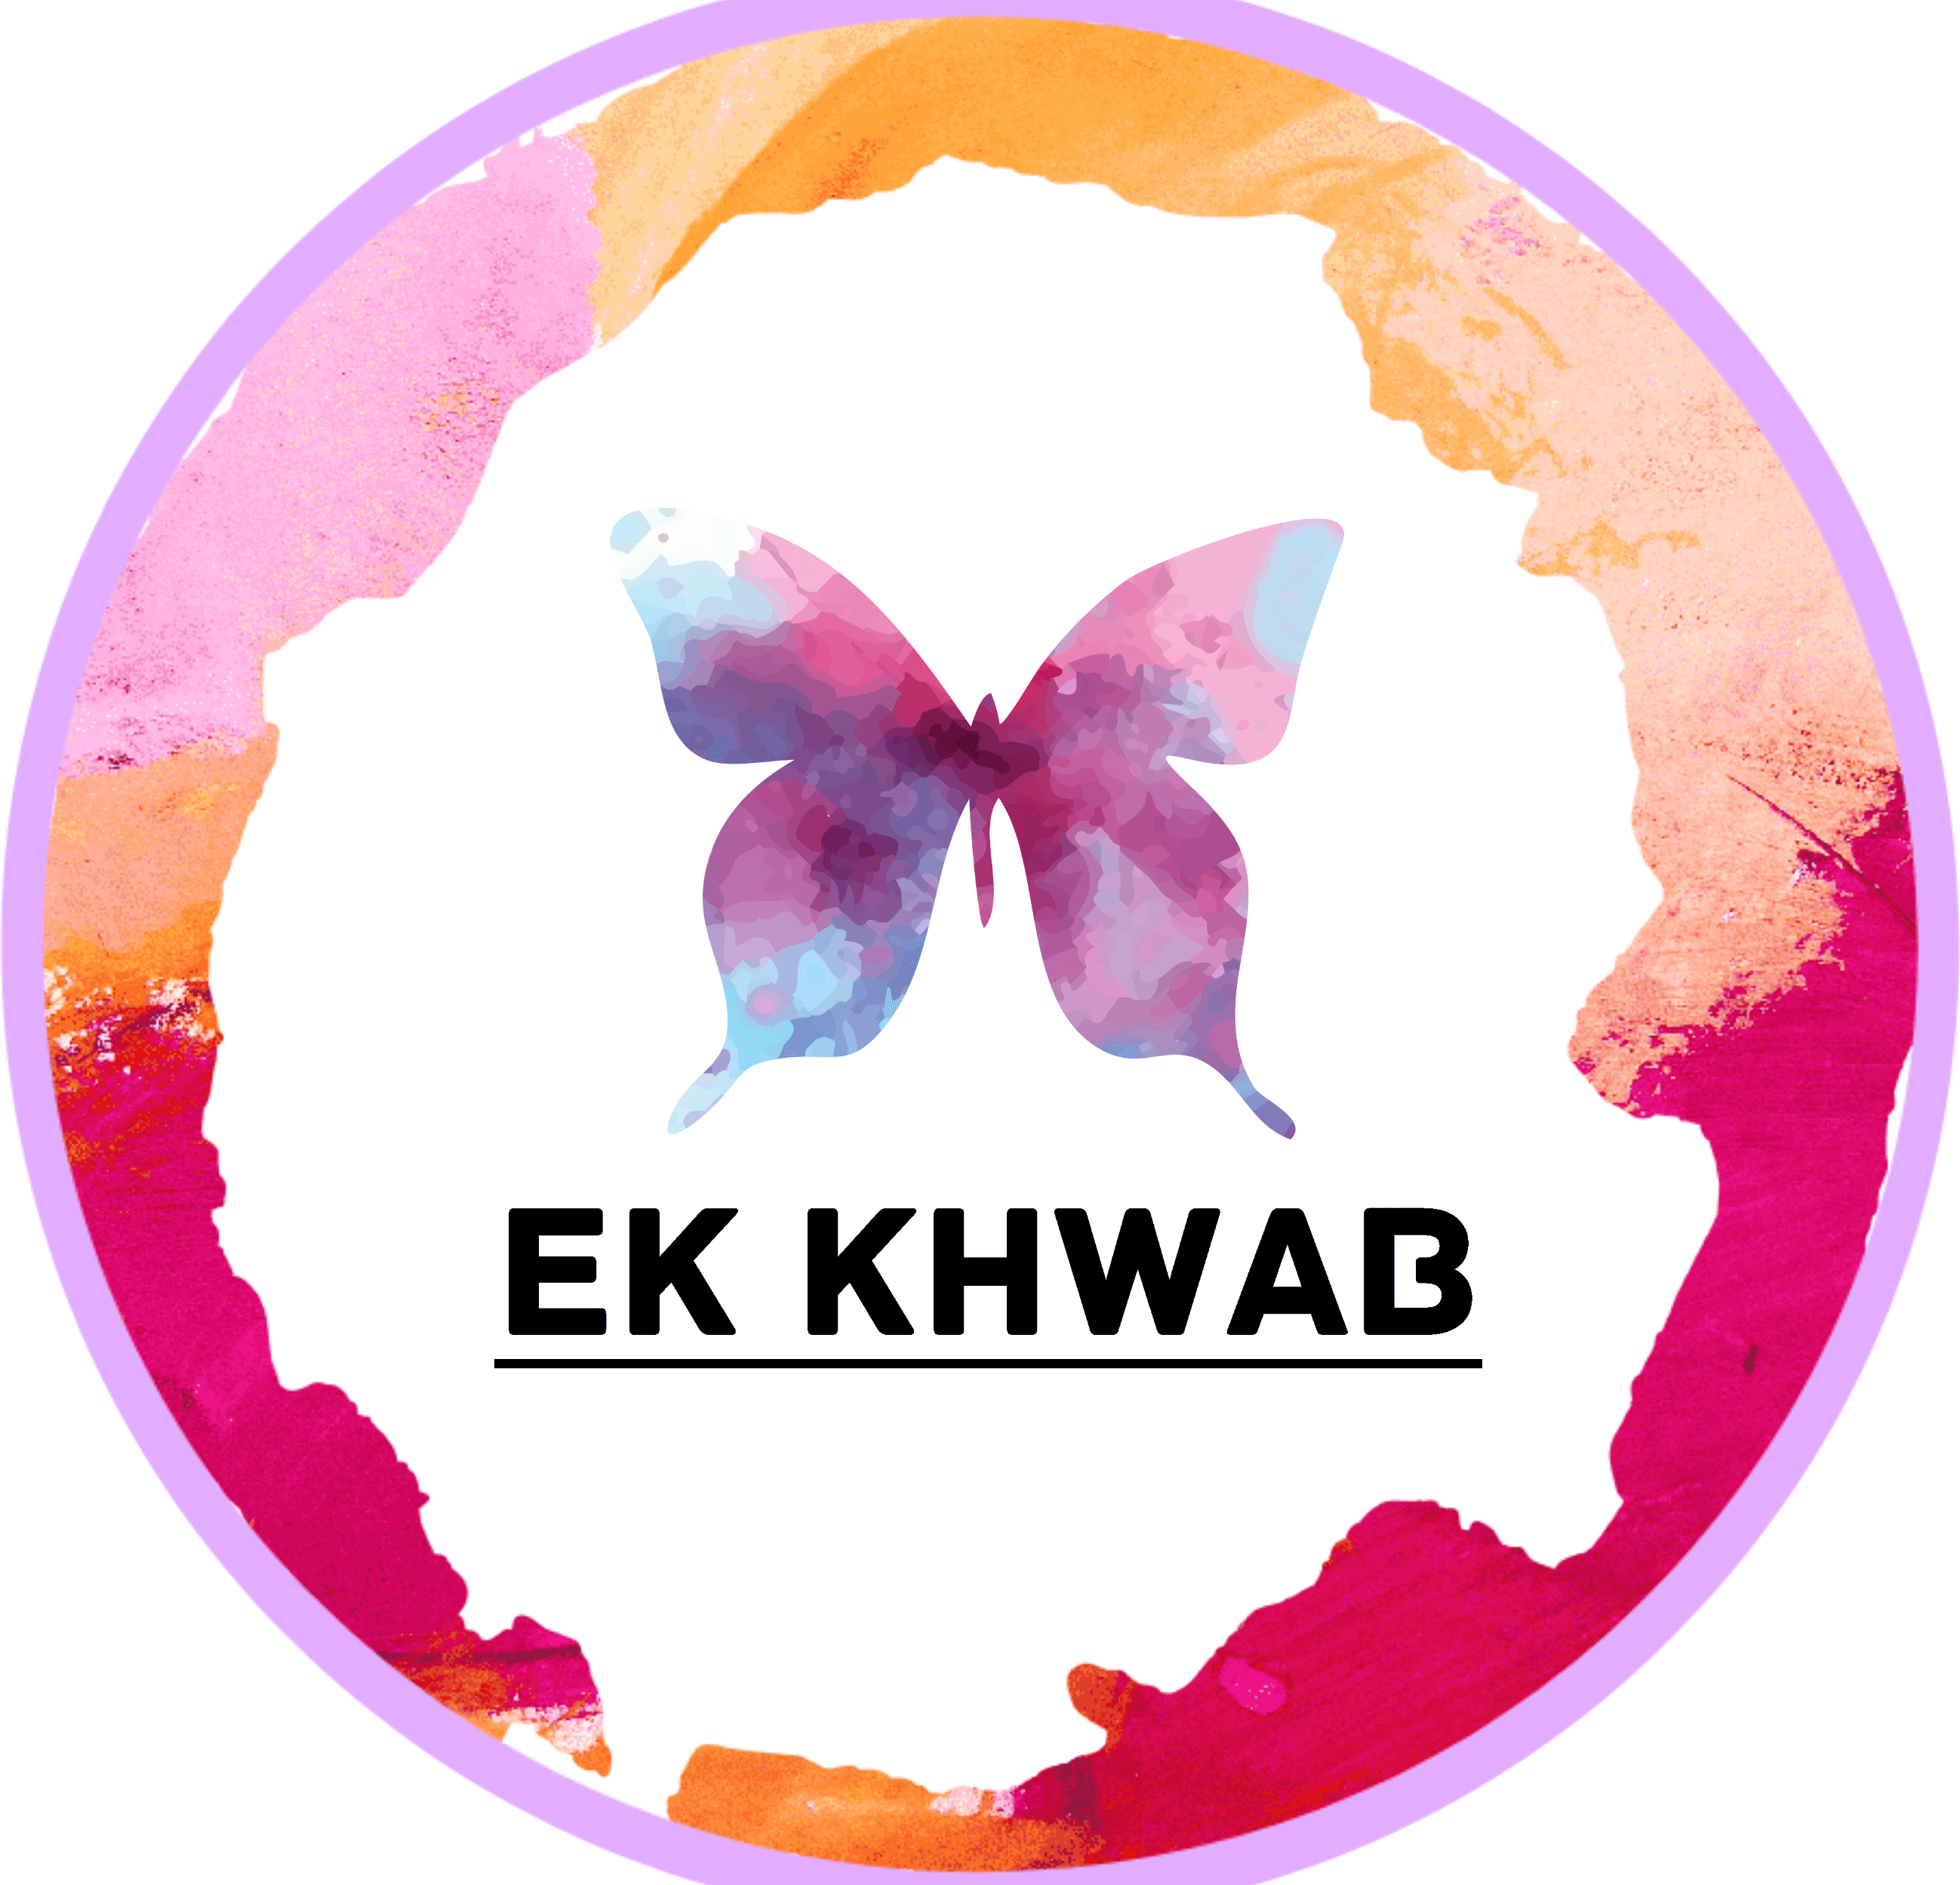 EK KHWAB FOUNDATION